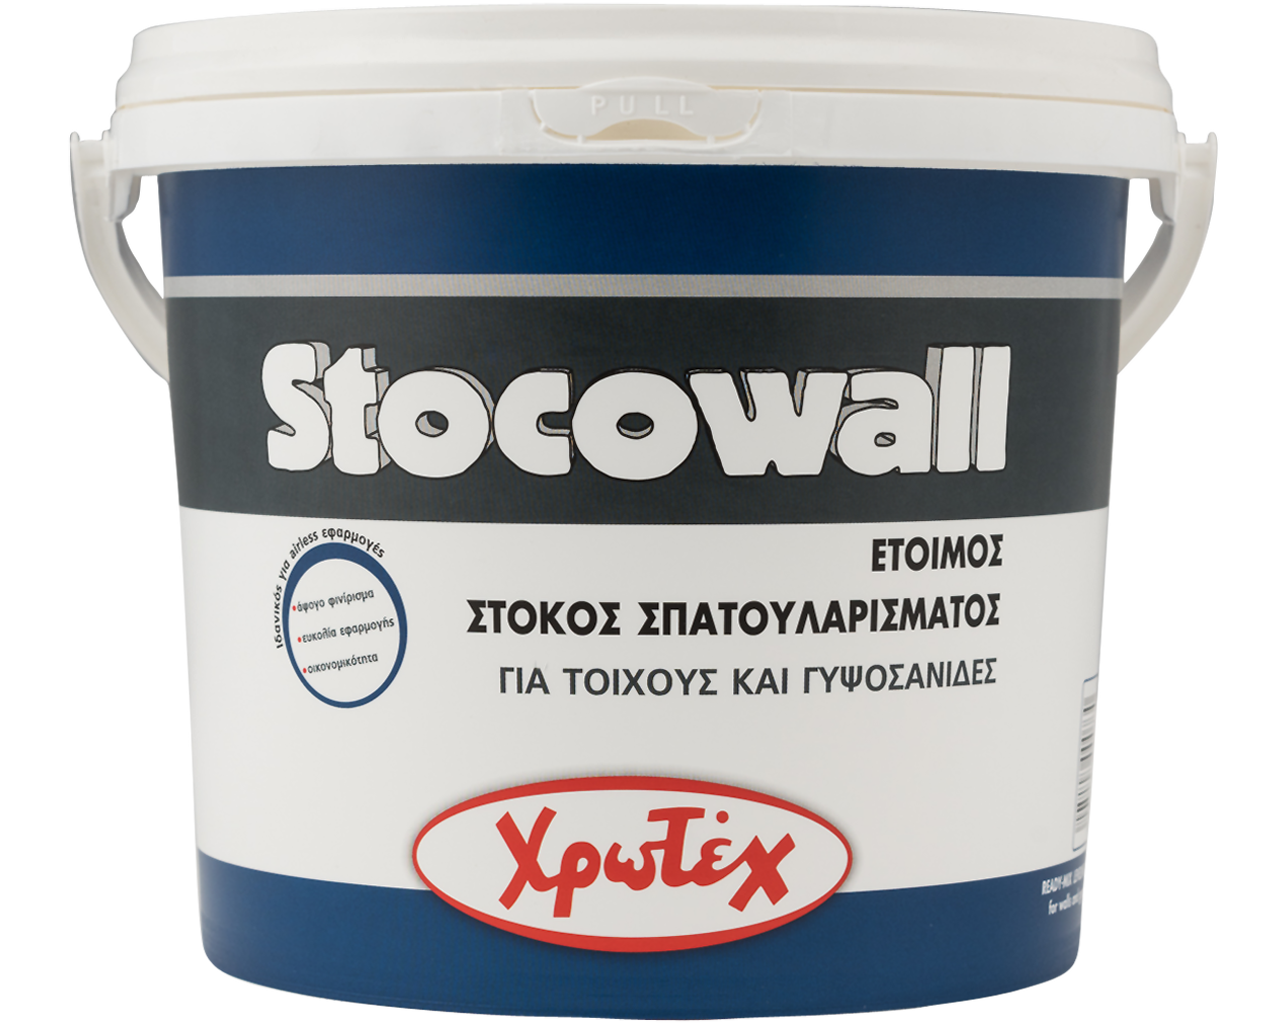 Χρωτέχ Stocowall Στόκος Σπατουλαρίσματος για Τοίχους & Γυψοσανίδες Λευκός 20kg